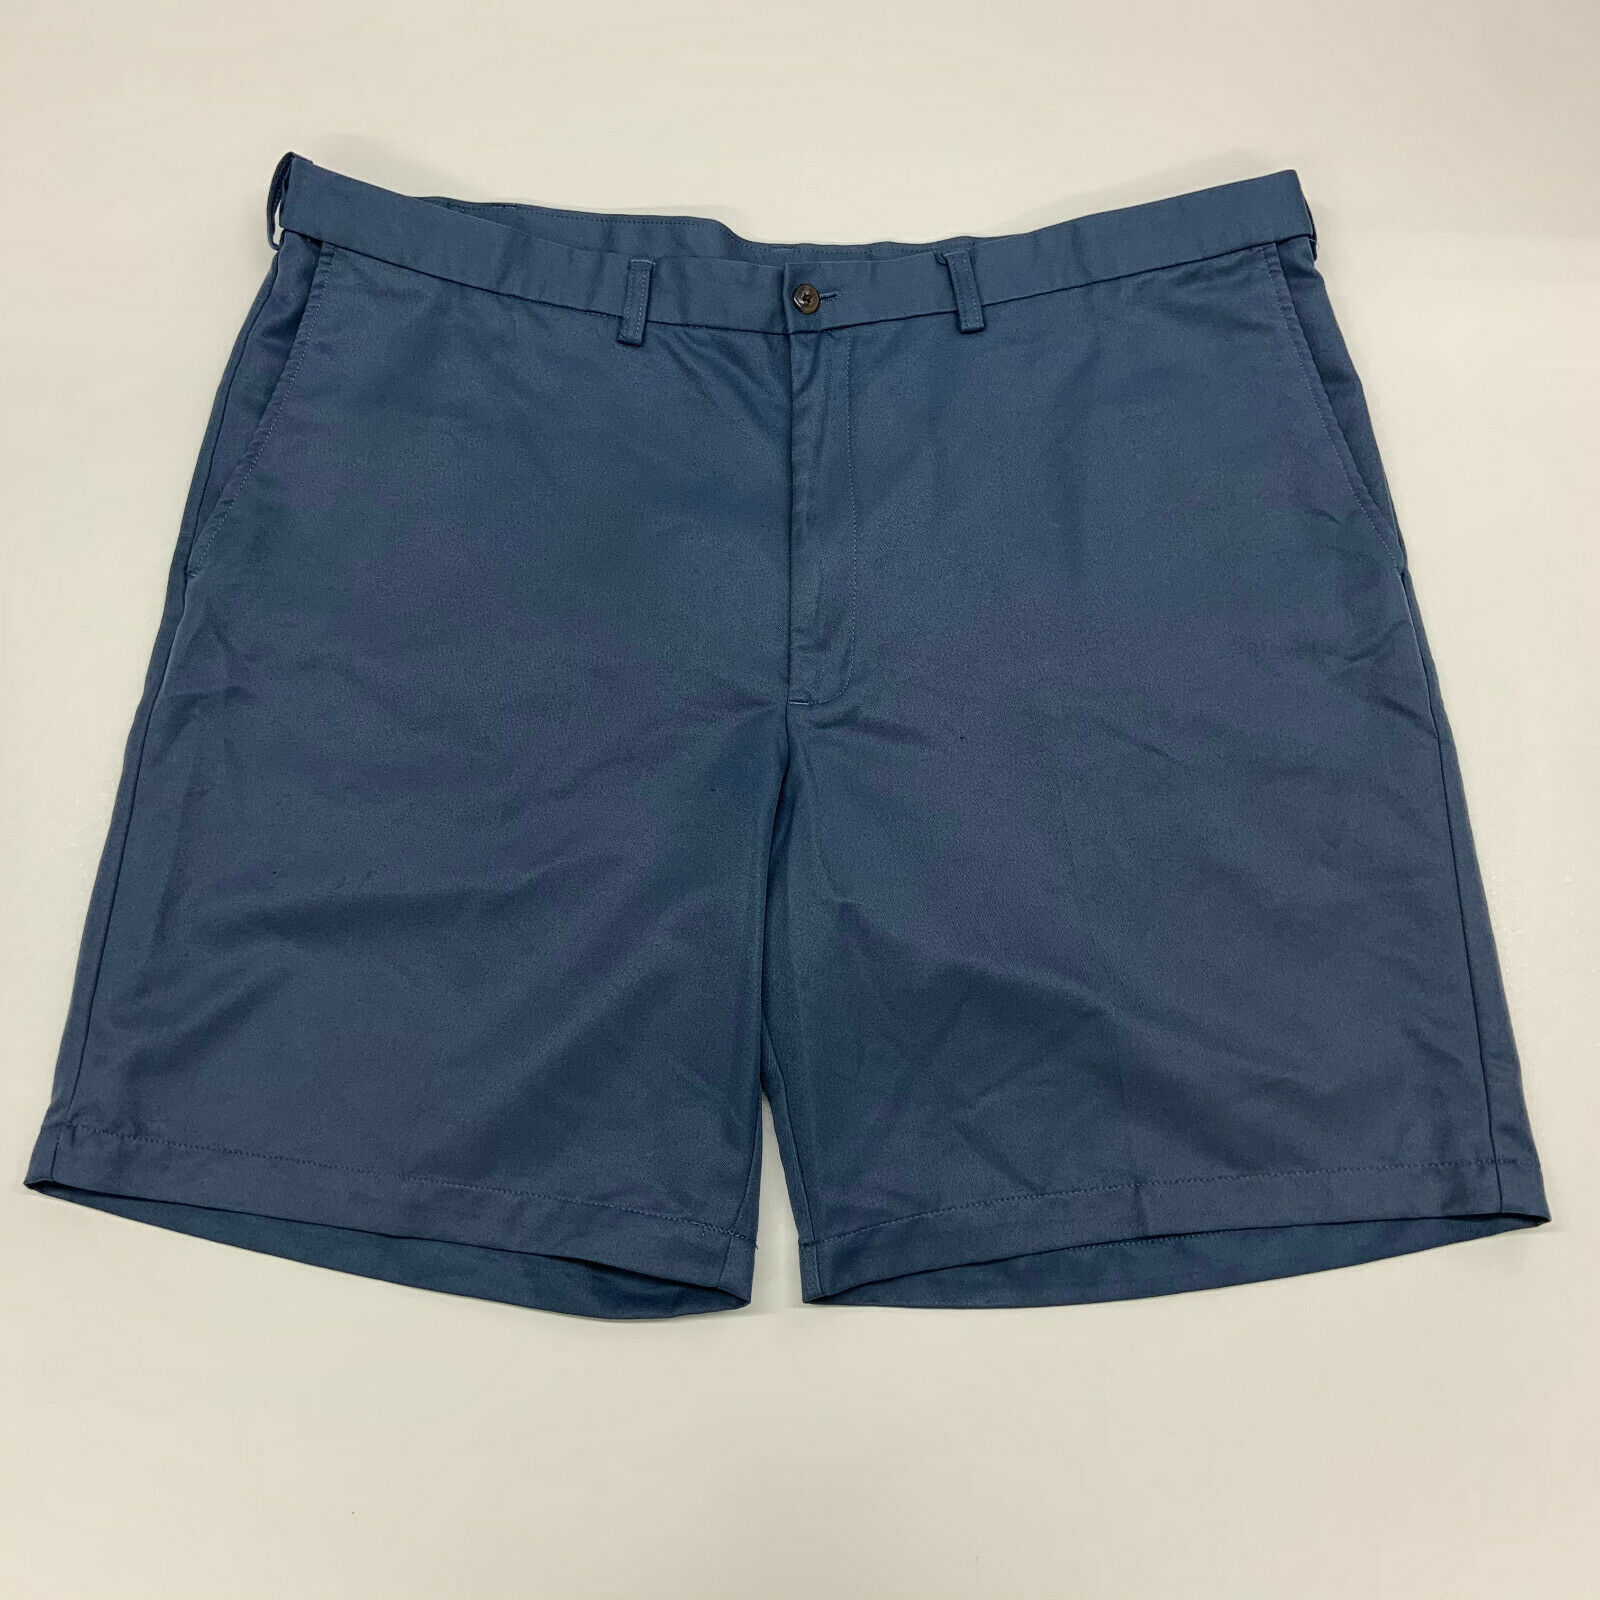 Haggar Polyester Golf Shorts Mens 42 Blue Casual - Shorts